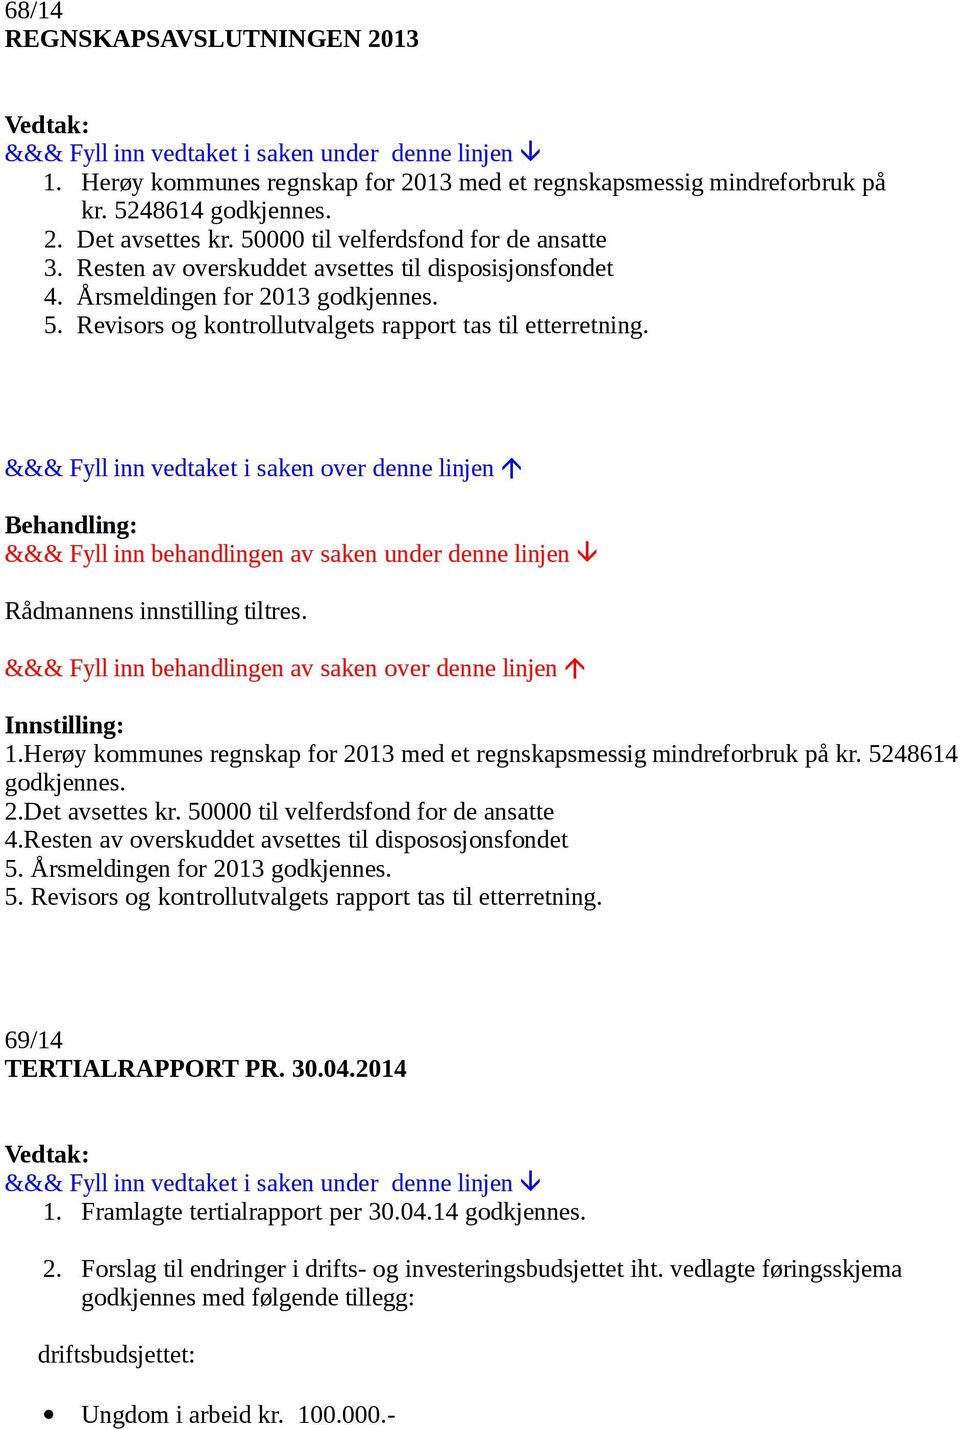 Herøy kommunes regnskap for 2013 med et regnskapsmessig mindreforbruk på kr. 5248614 godkjennes. 2.Det avsettes kr. 50000 til velferdsfond for de ansatte 4.